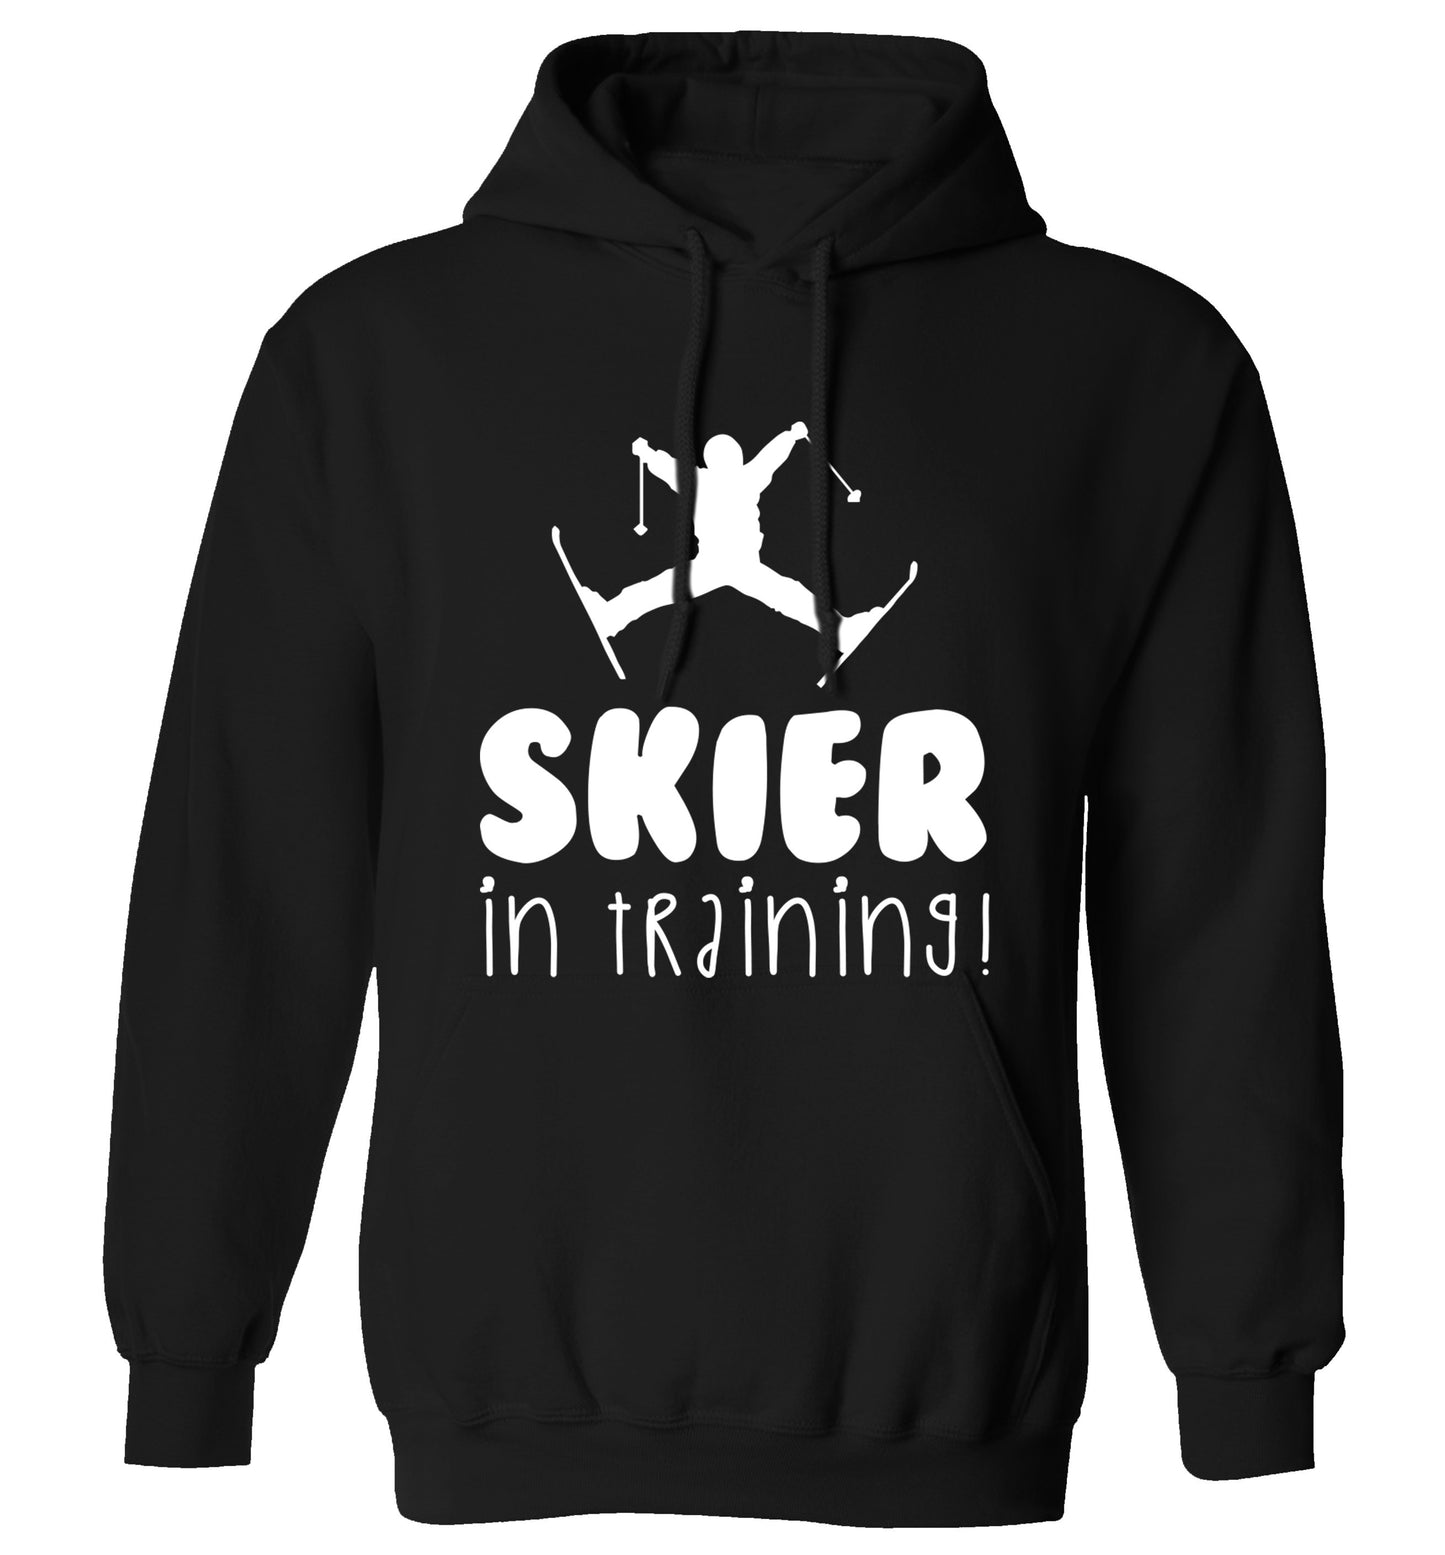 Skier in training adults unisex black hoodie 2XL